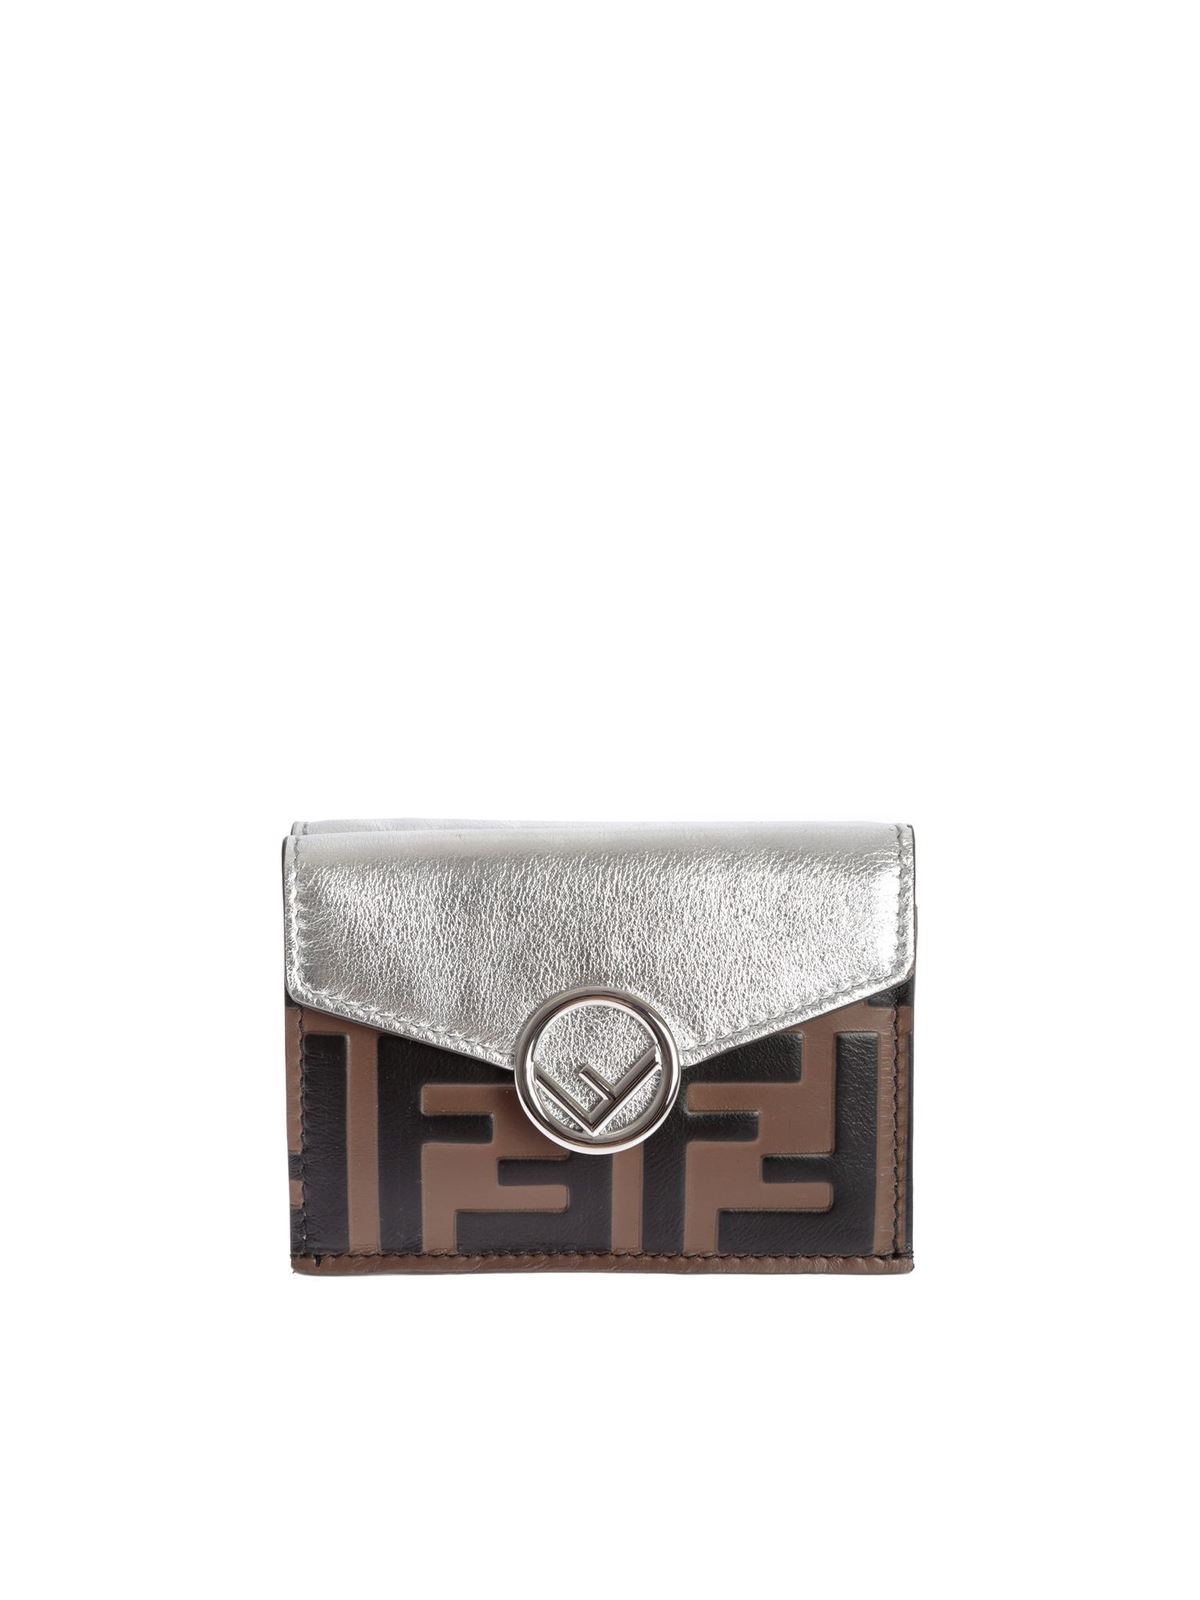 Fendi Micro Trifold Wallet In Silver Colour